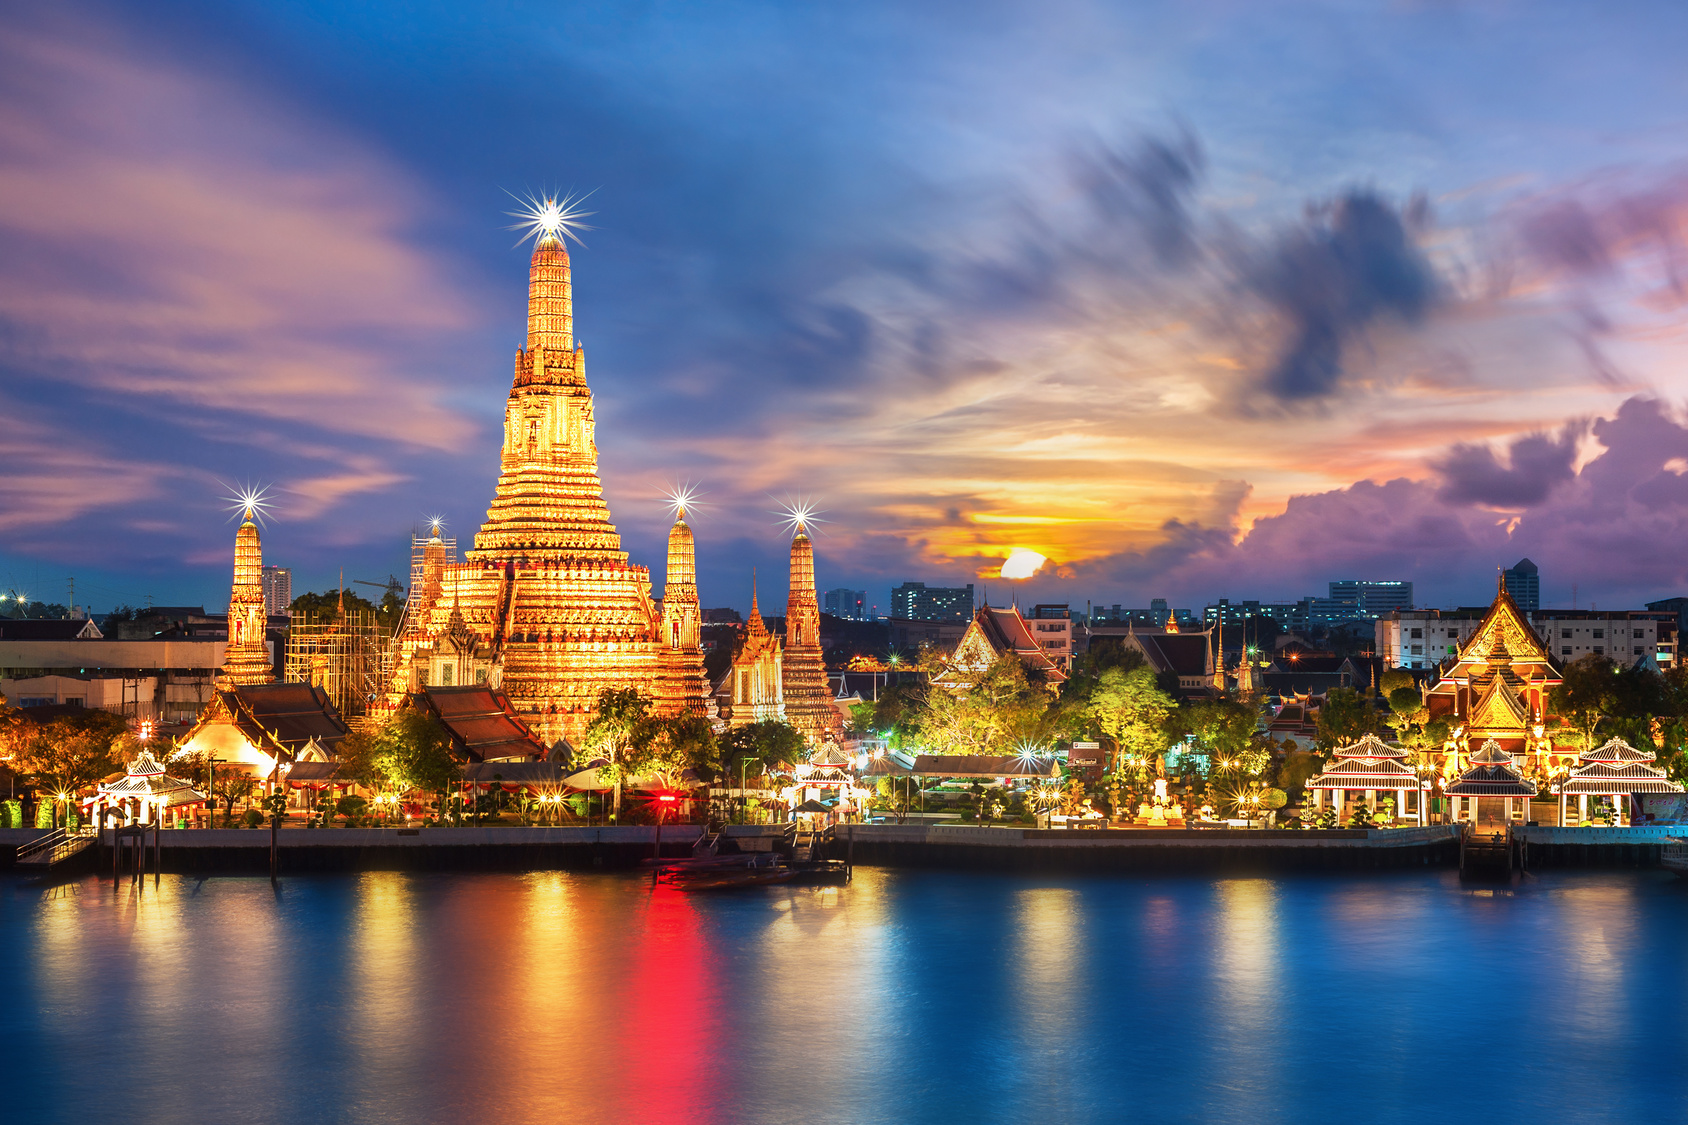 Covid-19 : La Thaïlande n'exigera plus de Thailand Pass dès le 1er juillet  - Routard.com